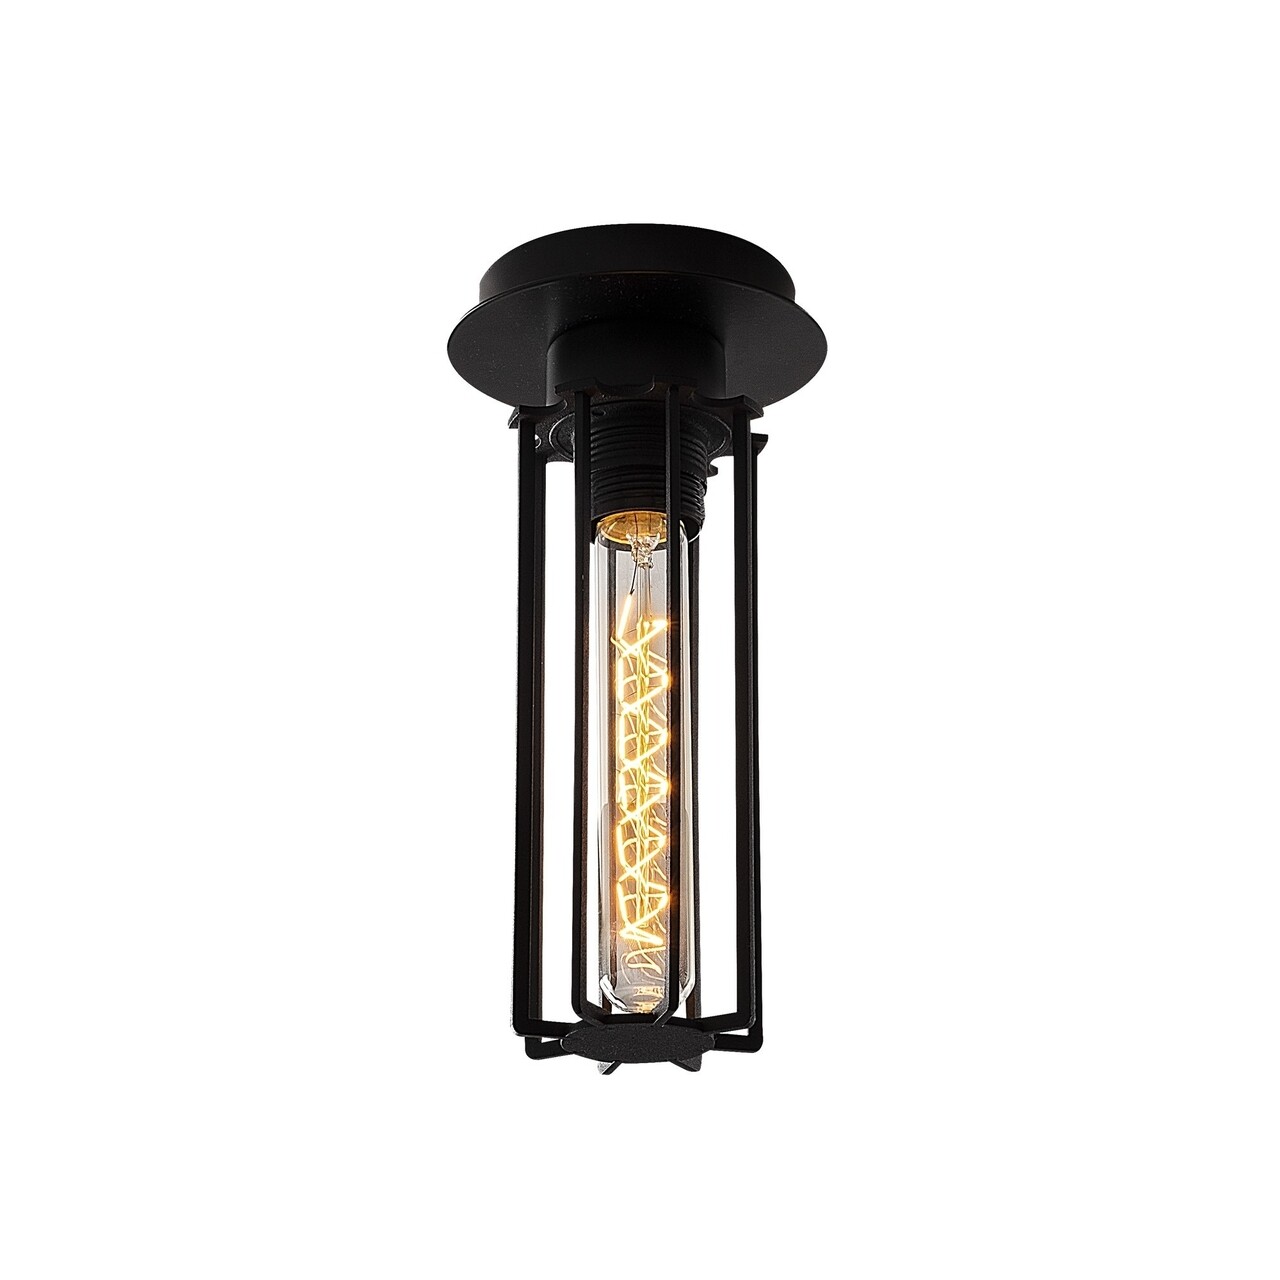 Likya N-1015, Noor Mennyezeti lámpa, 12 x 25 cm, 1 x E27, 100W, fekete